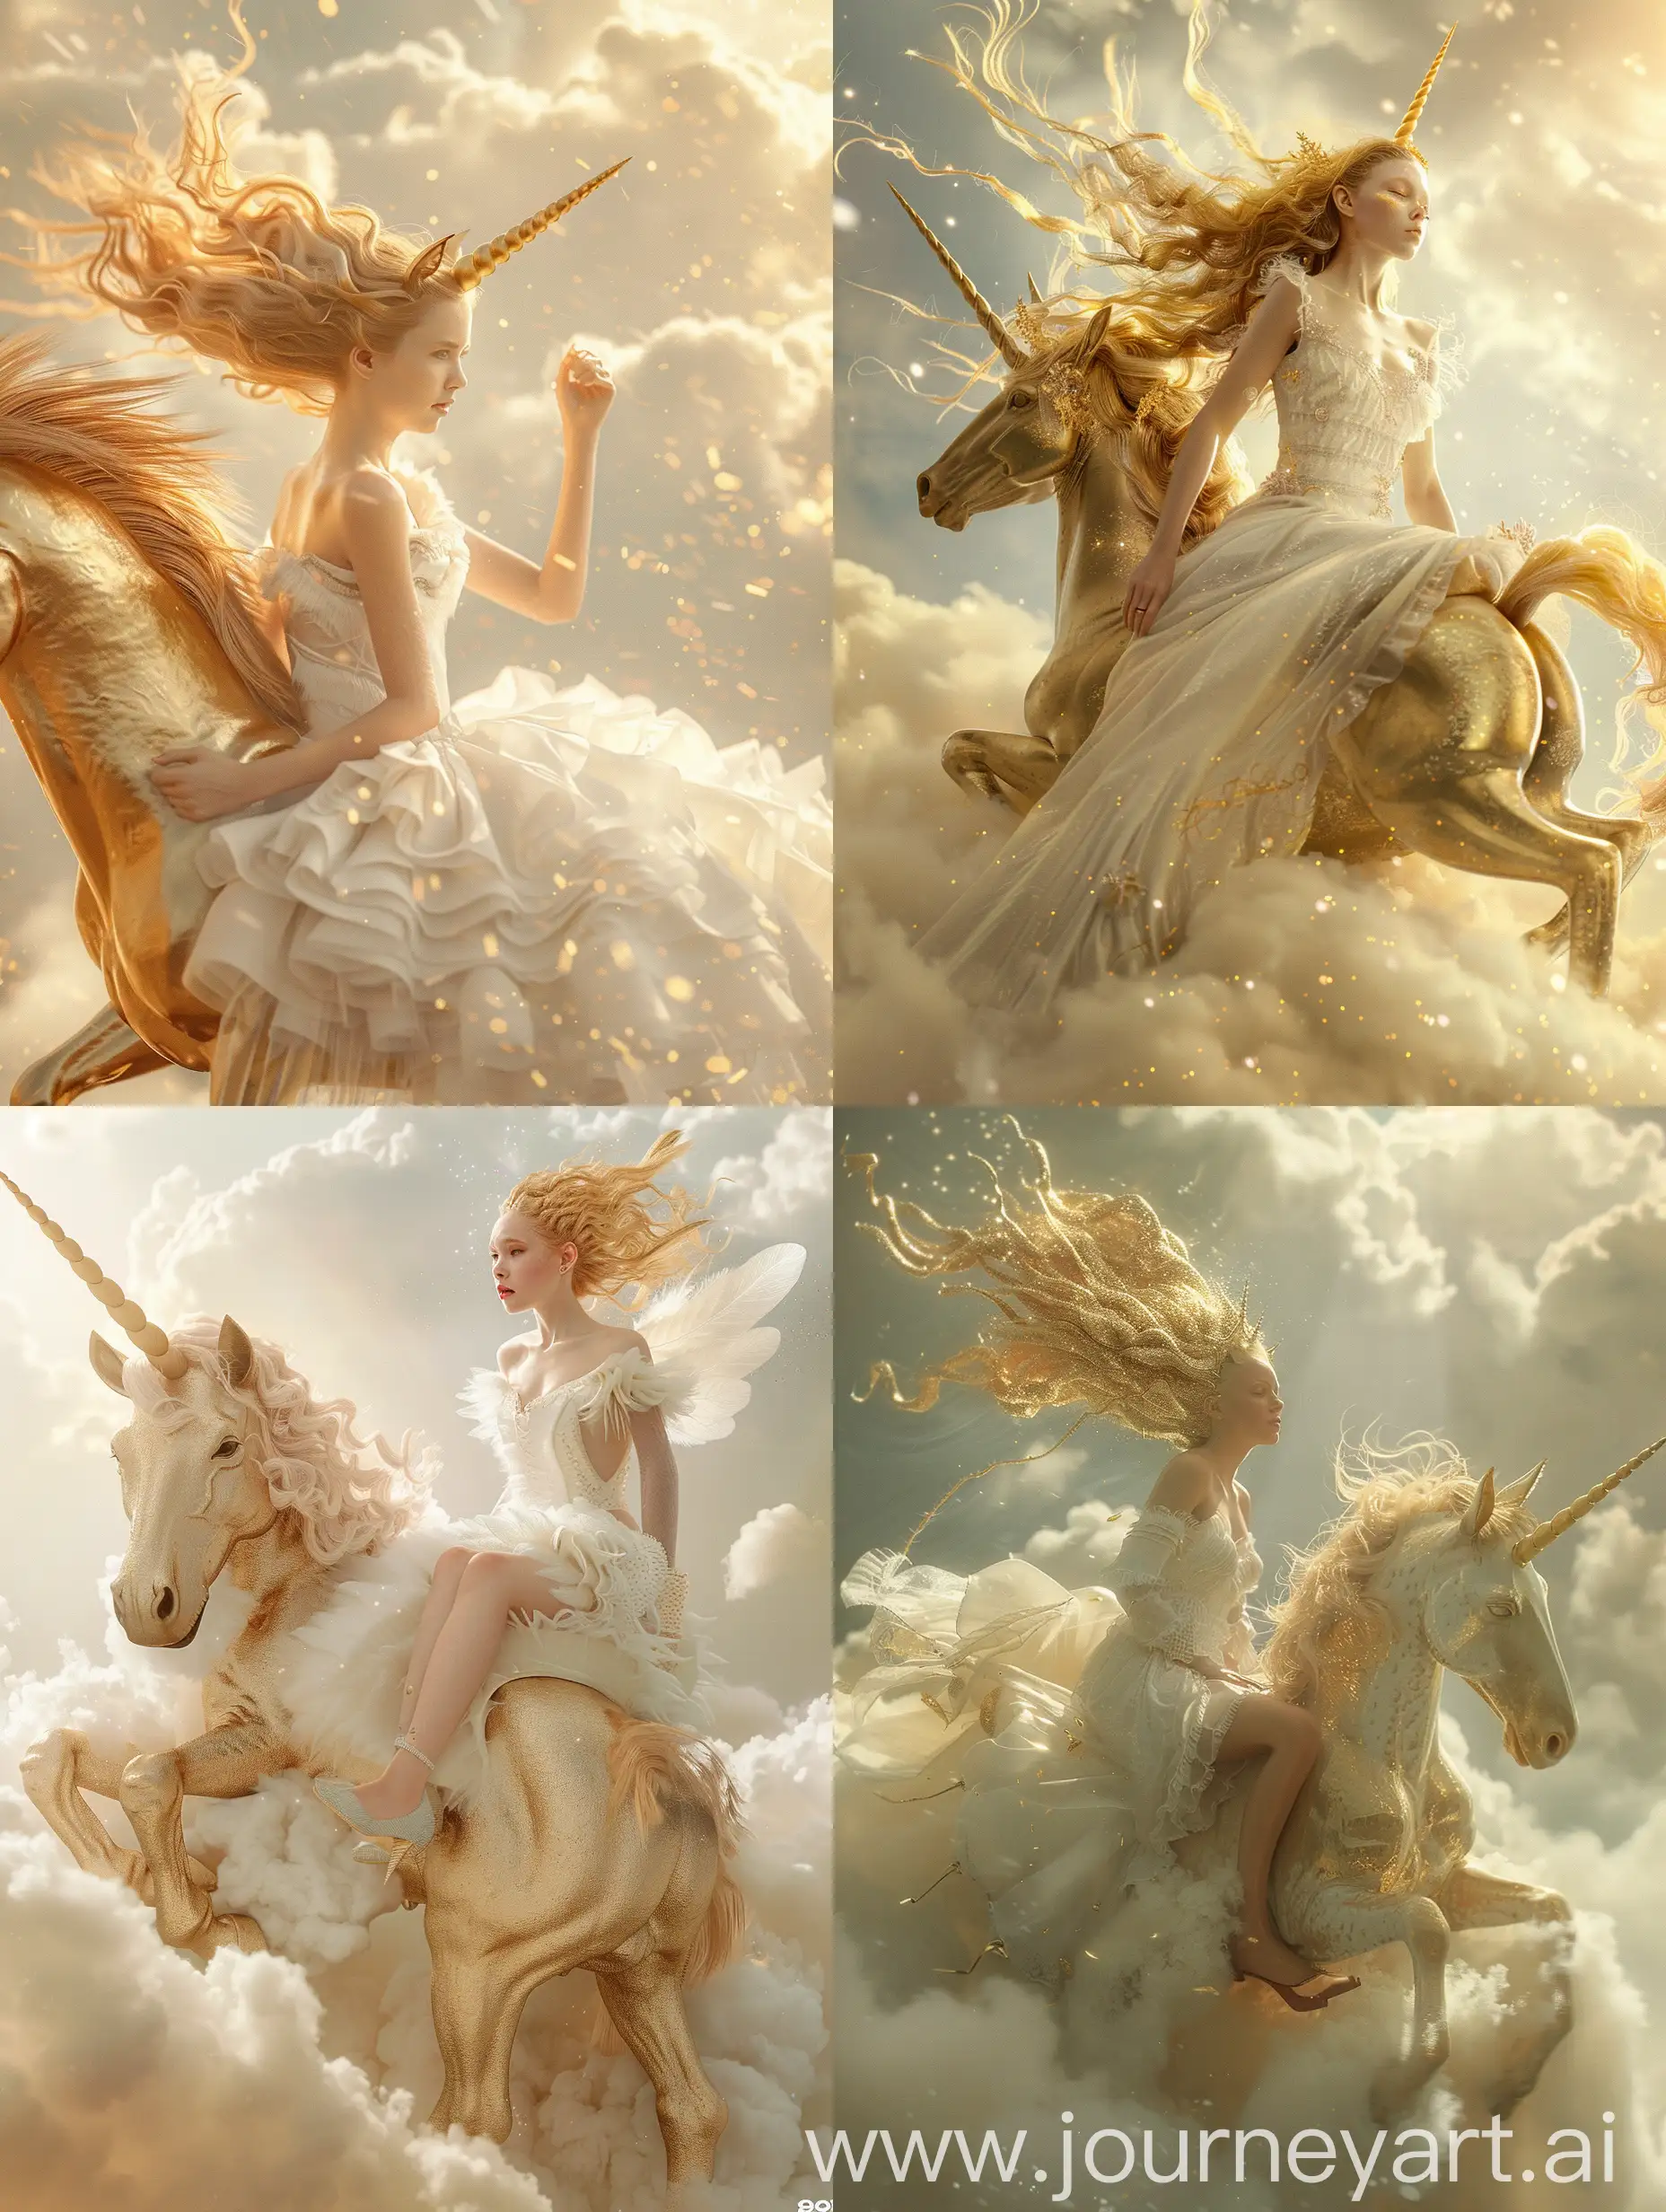 Девушка в белом фантастическом платье, летящие золотые волосы, сидит боком на золотом единороге, облака, 8k, дымка, ультодетализация, плёночная фотография, рассеяние света, тенденции на артстанции, резкий фокус, высокая детализация